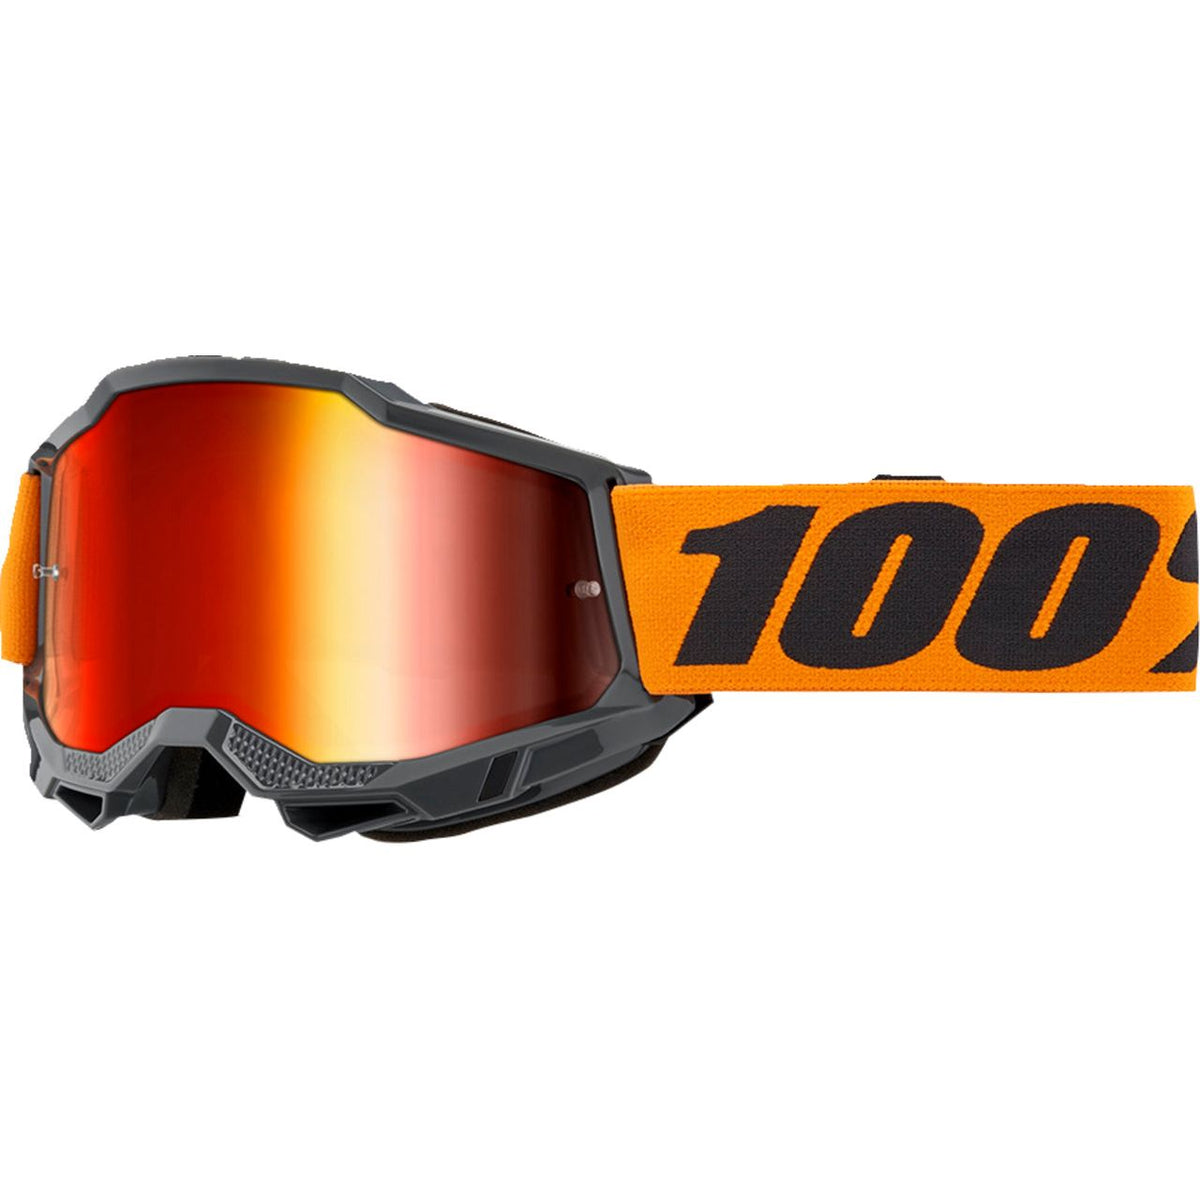 100% Accuri 2 Moto/MTB Goggle - Orange; Mirror Red